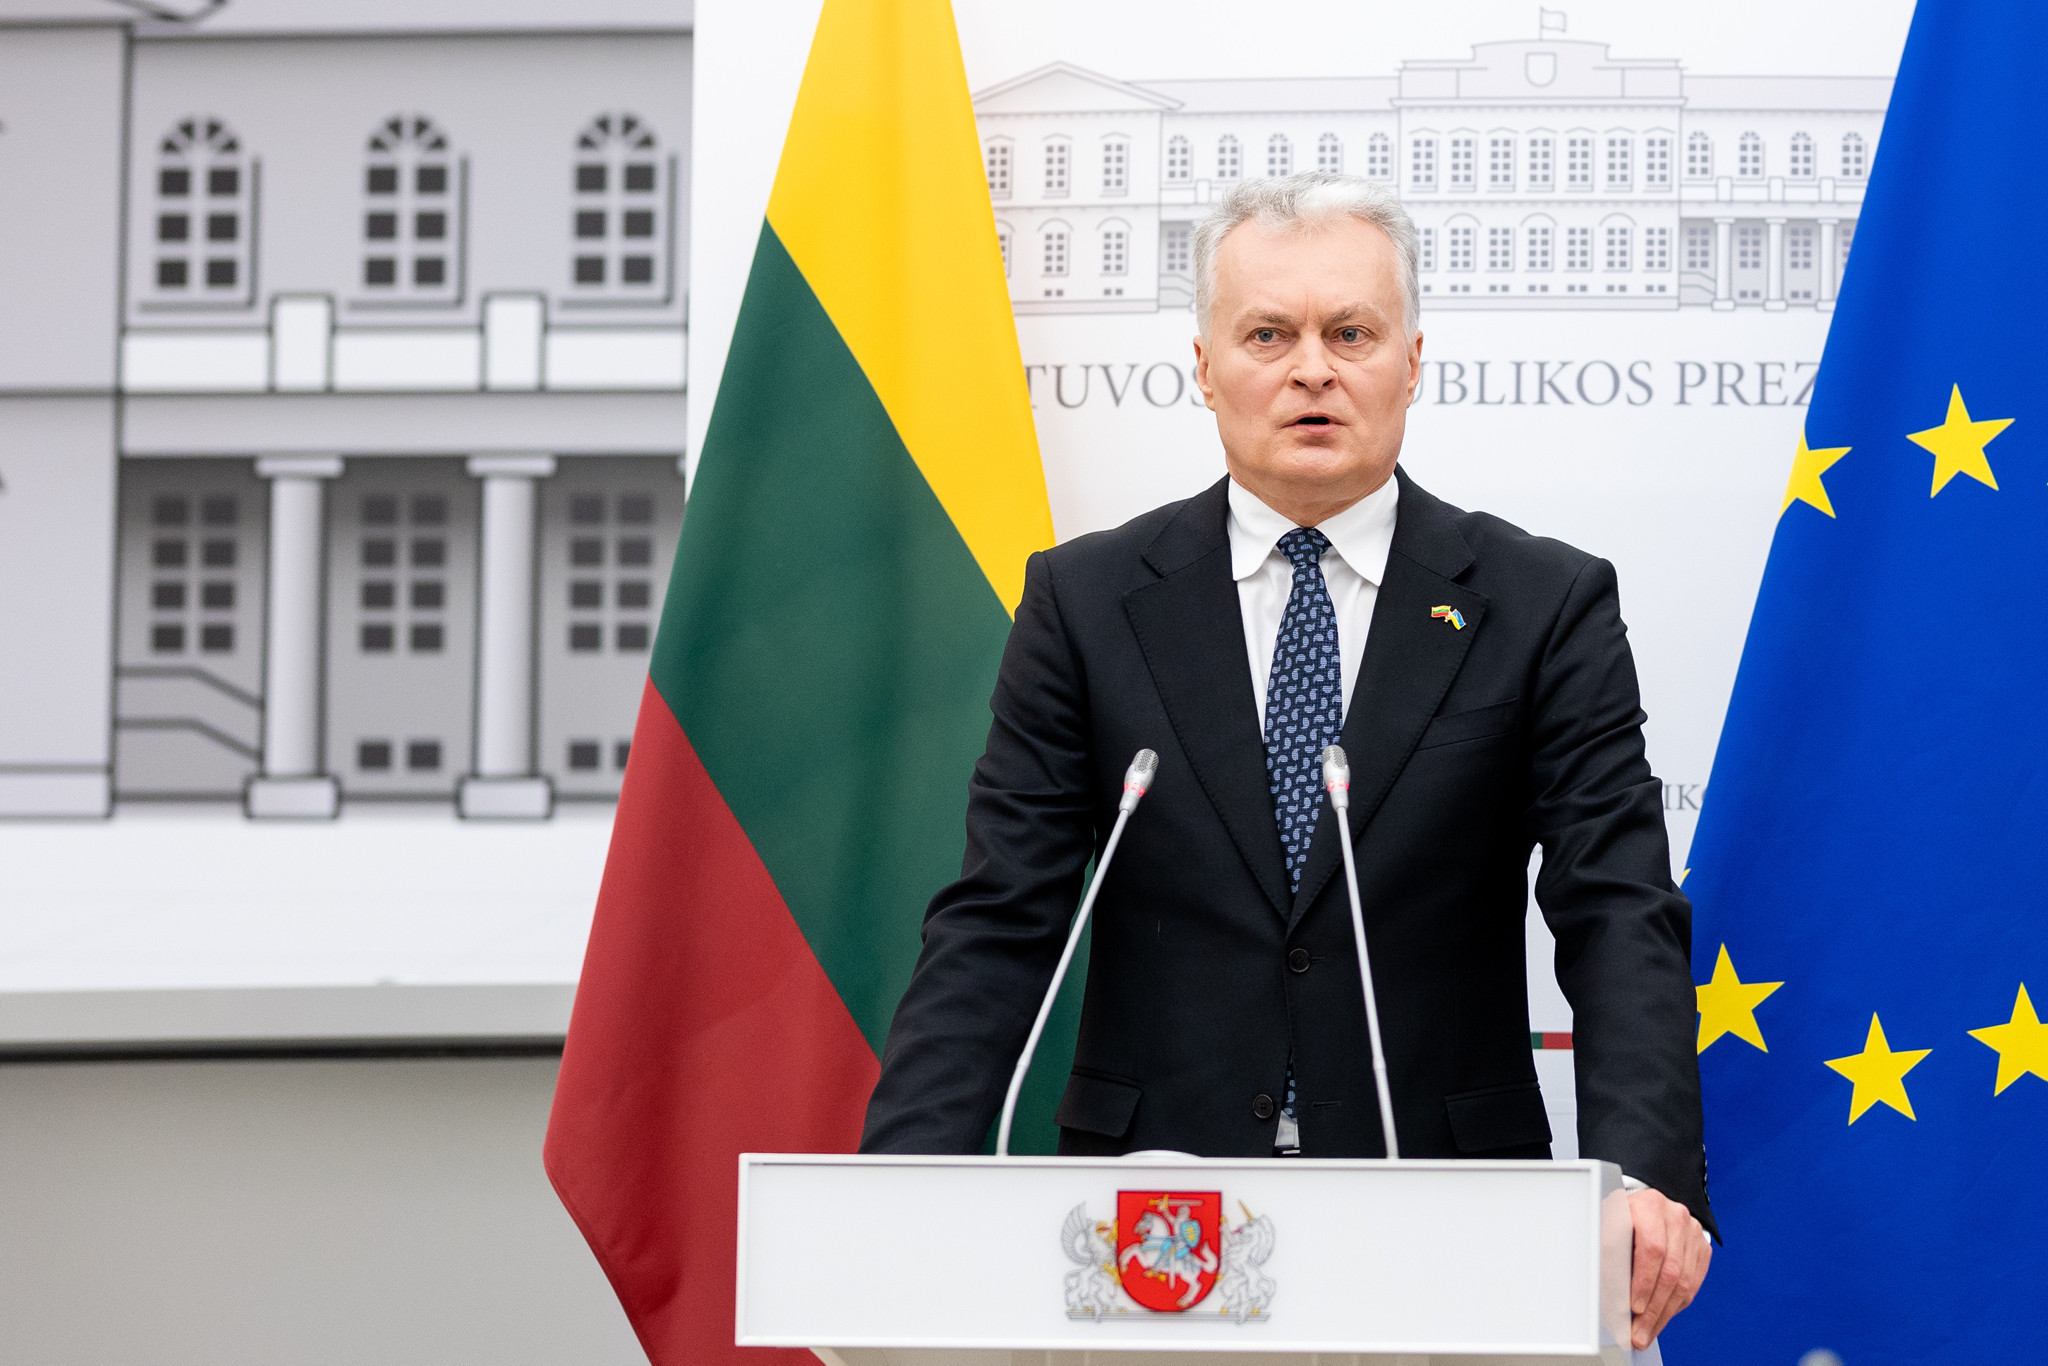 G. Nausėda – o roli Litwy w członkostwie Ukrainy w UE: tym razem byliśmy złoczyńcami